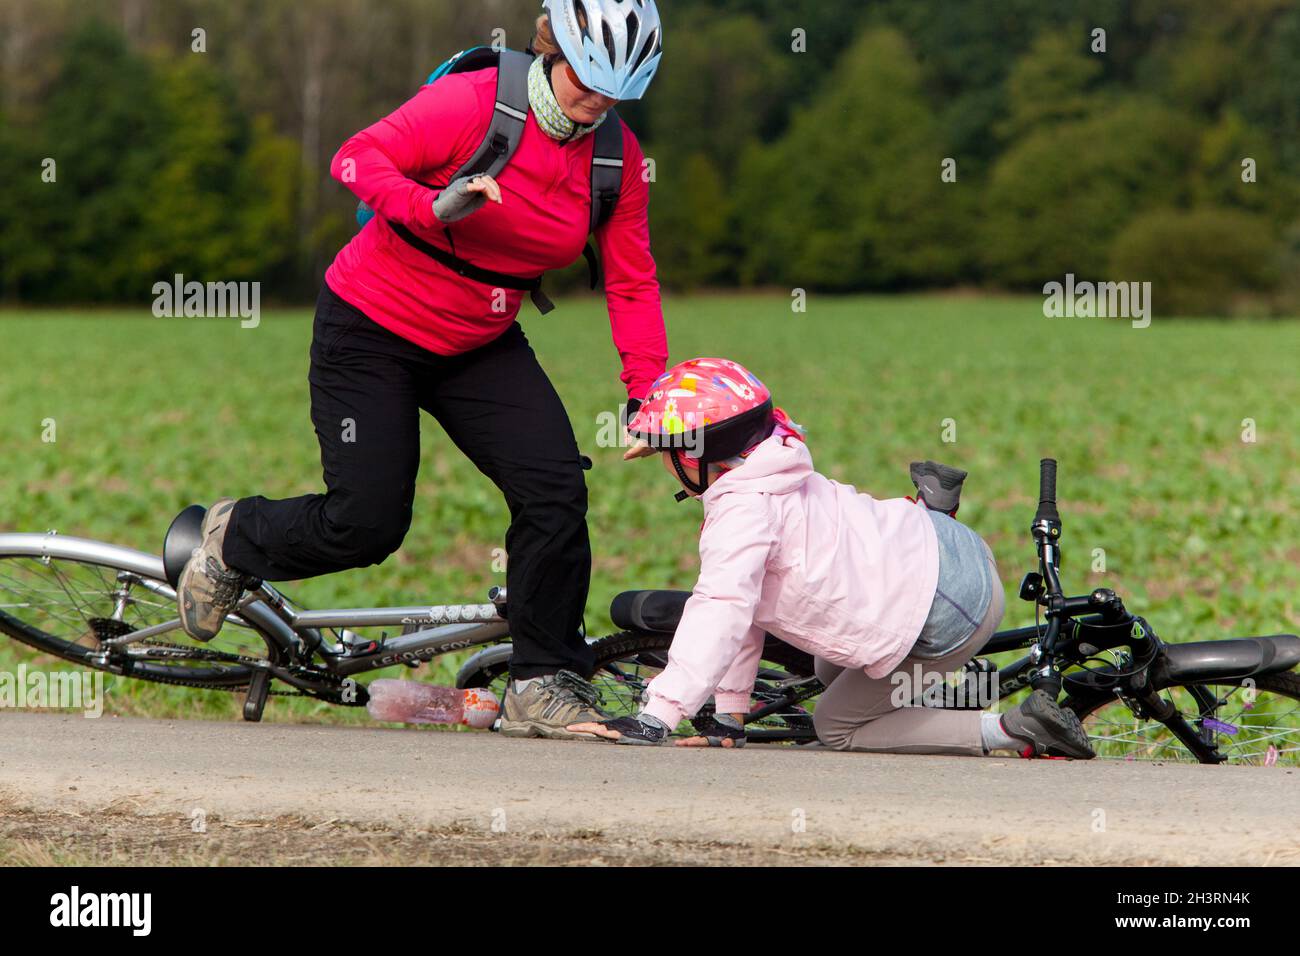 Enfant après la chute de la bicyclette, une fille avec un casque de vélo, une femme se précipitant pour l'aide Banque D'Images